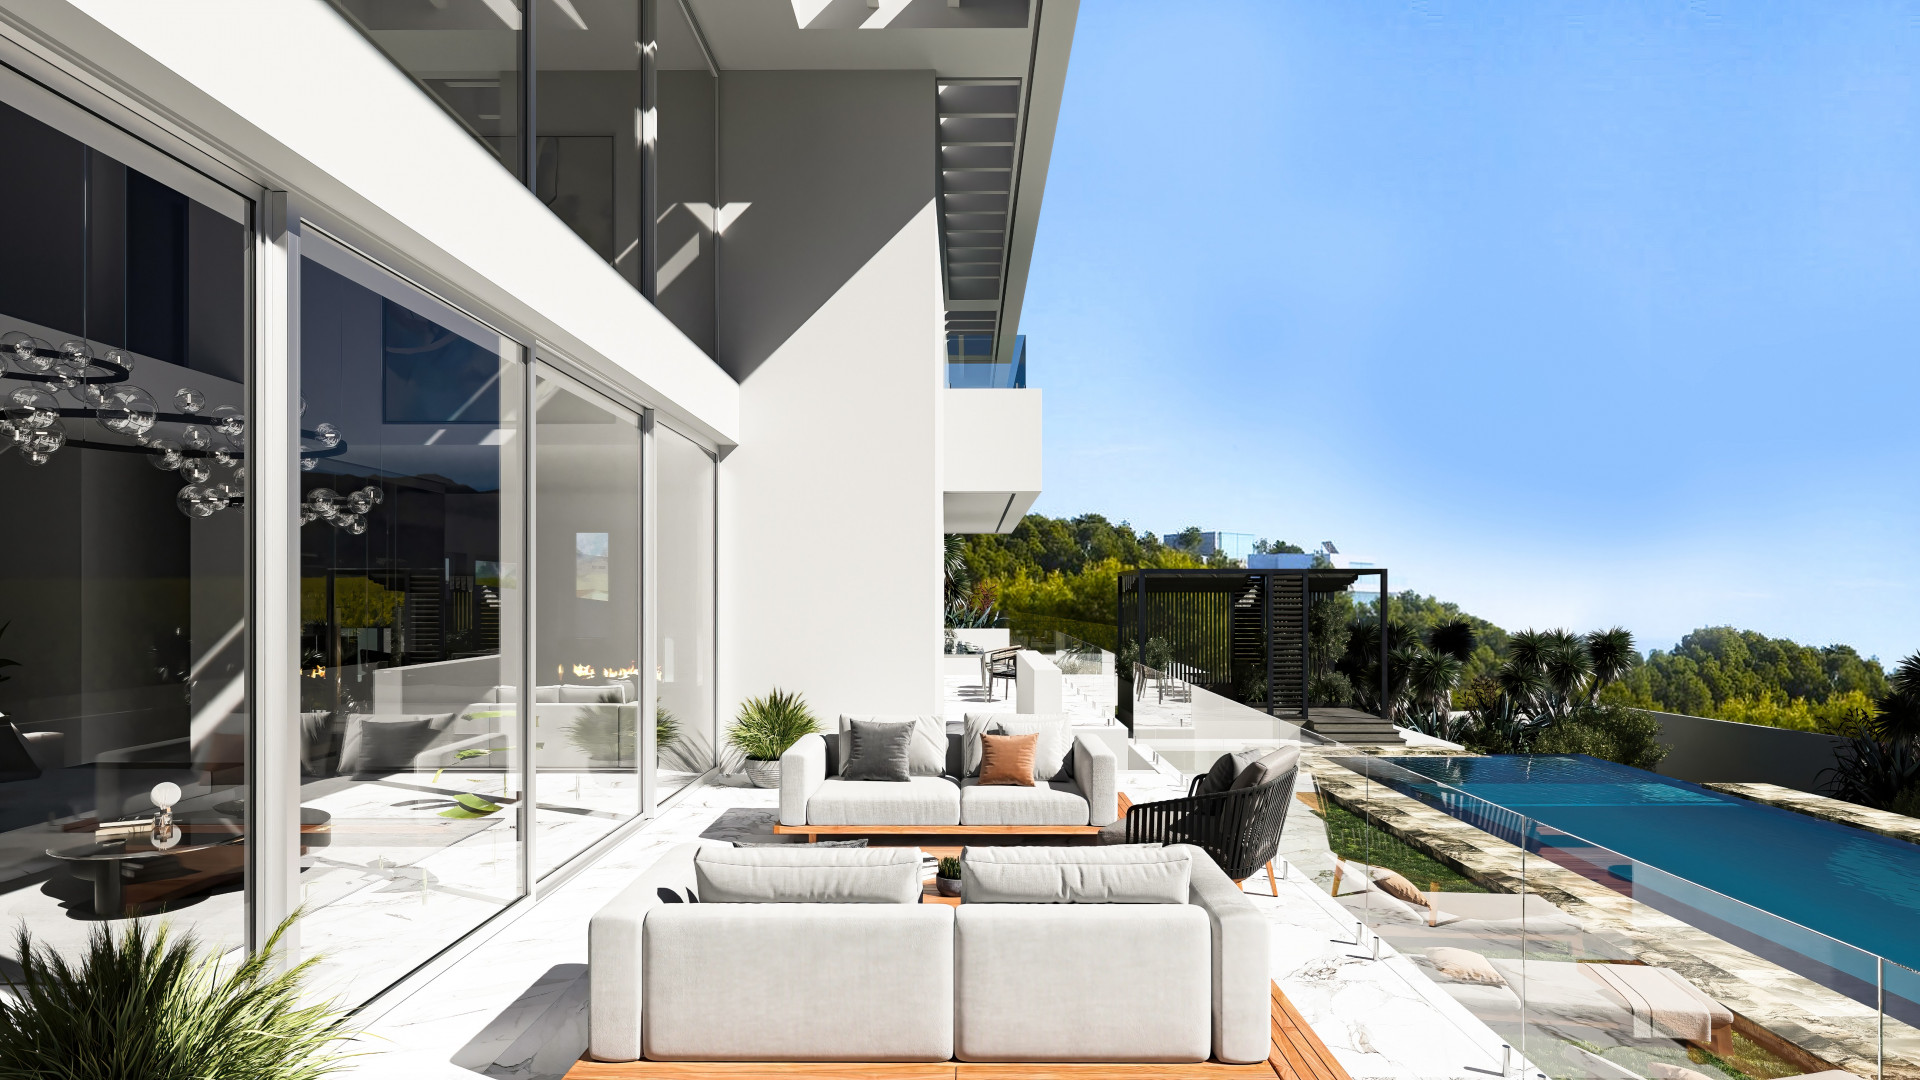 Brand-new modern luxury villa for sale in Paraiso Alto